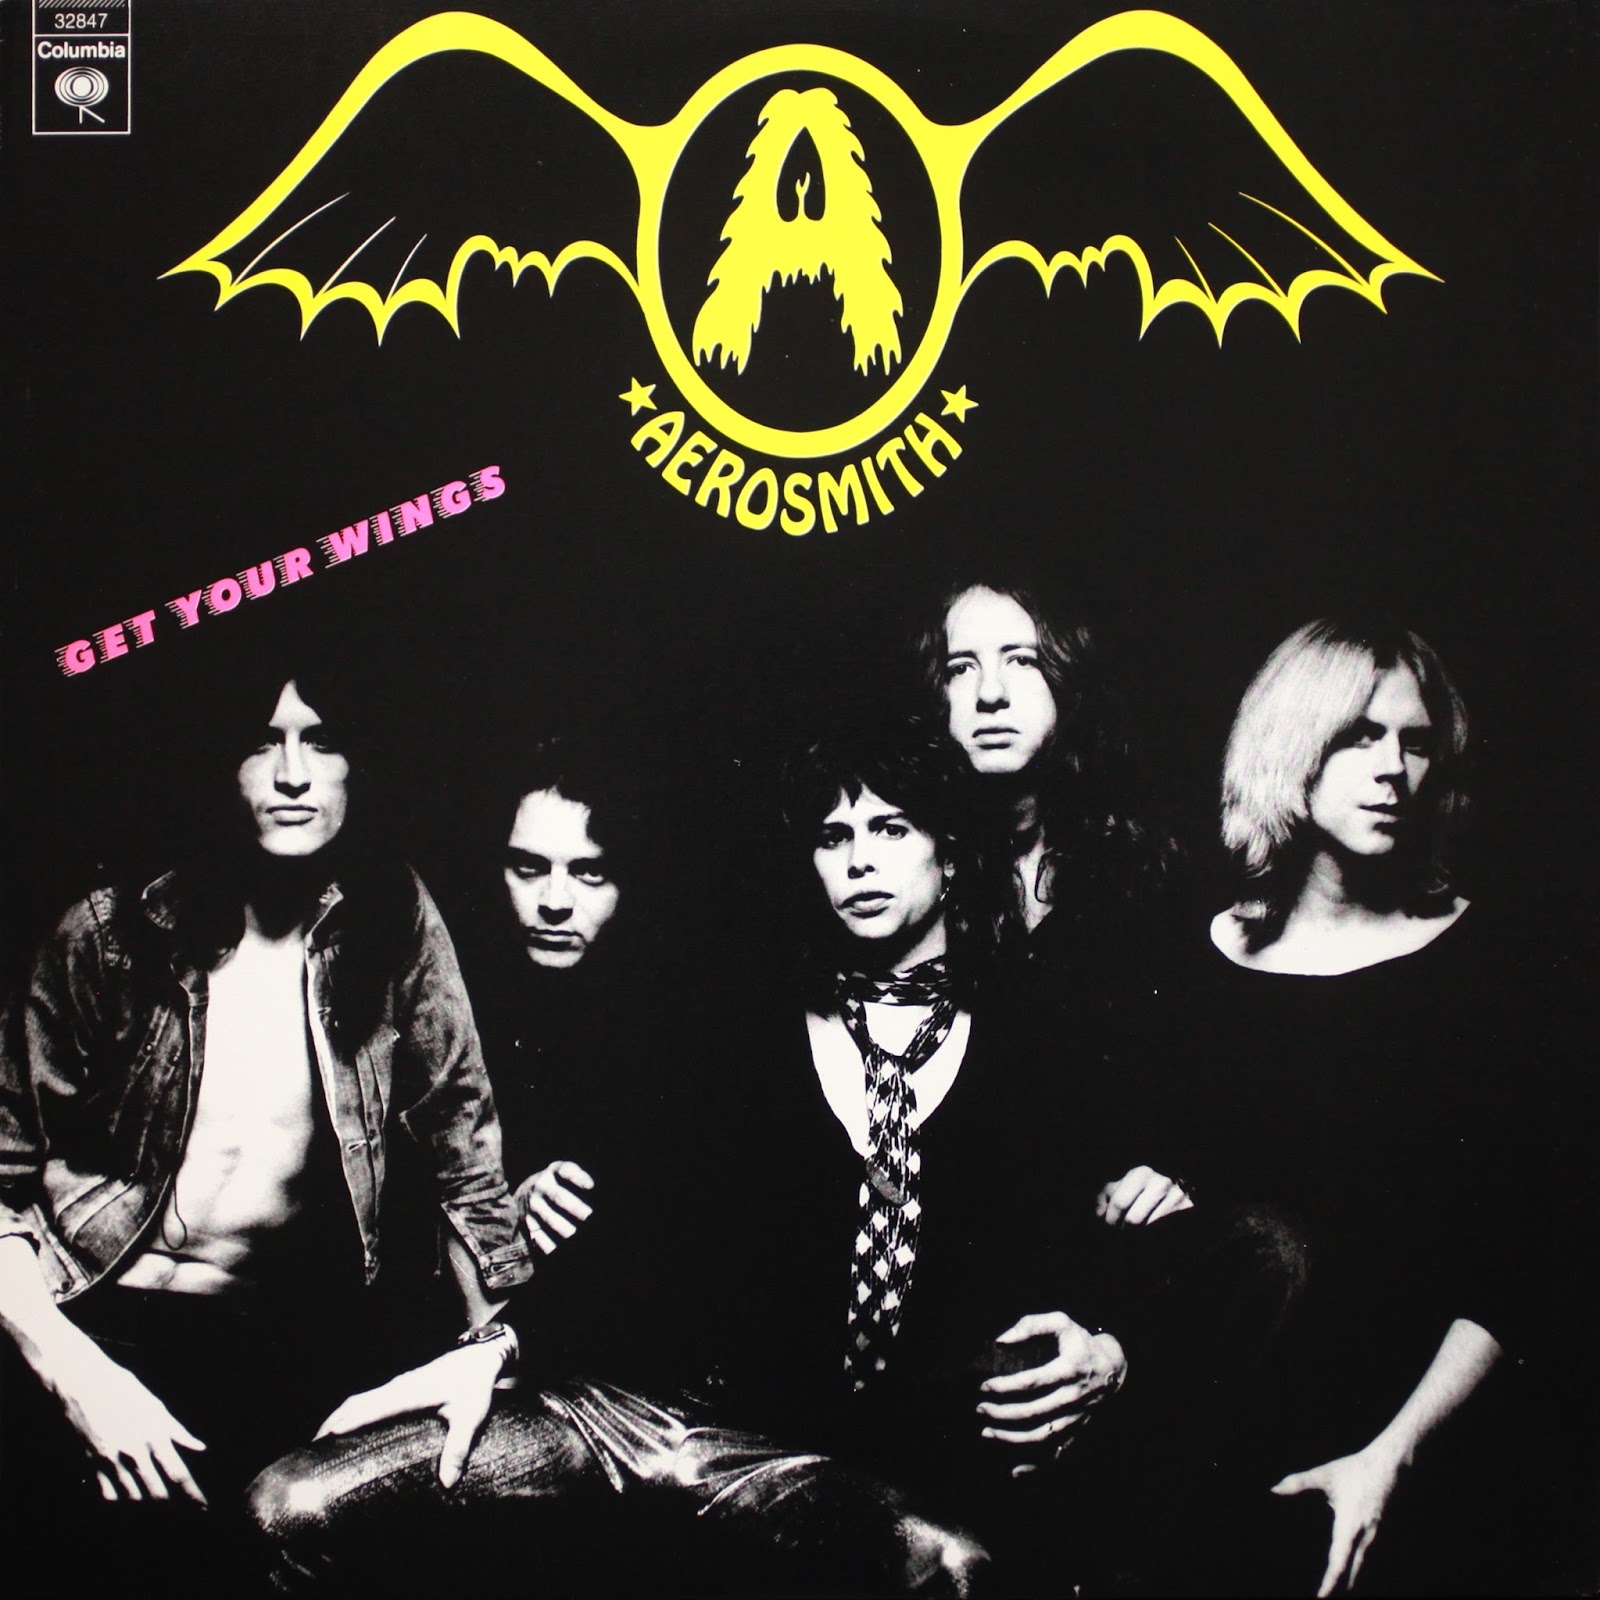 aerosmith 1974 tour dates